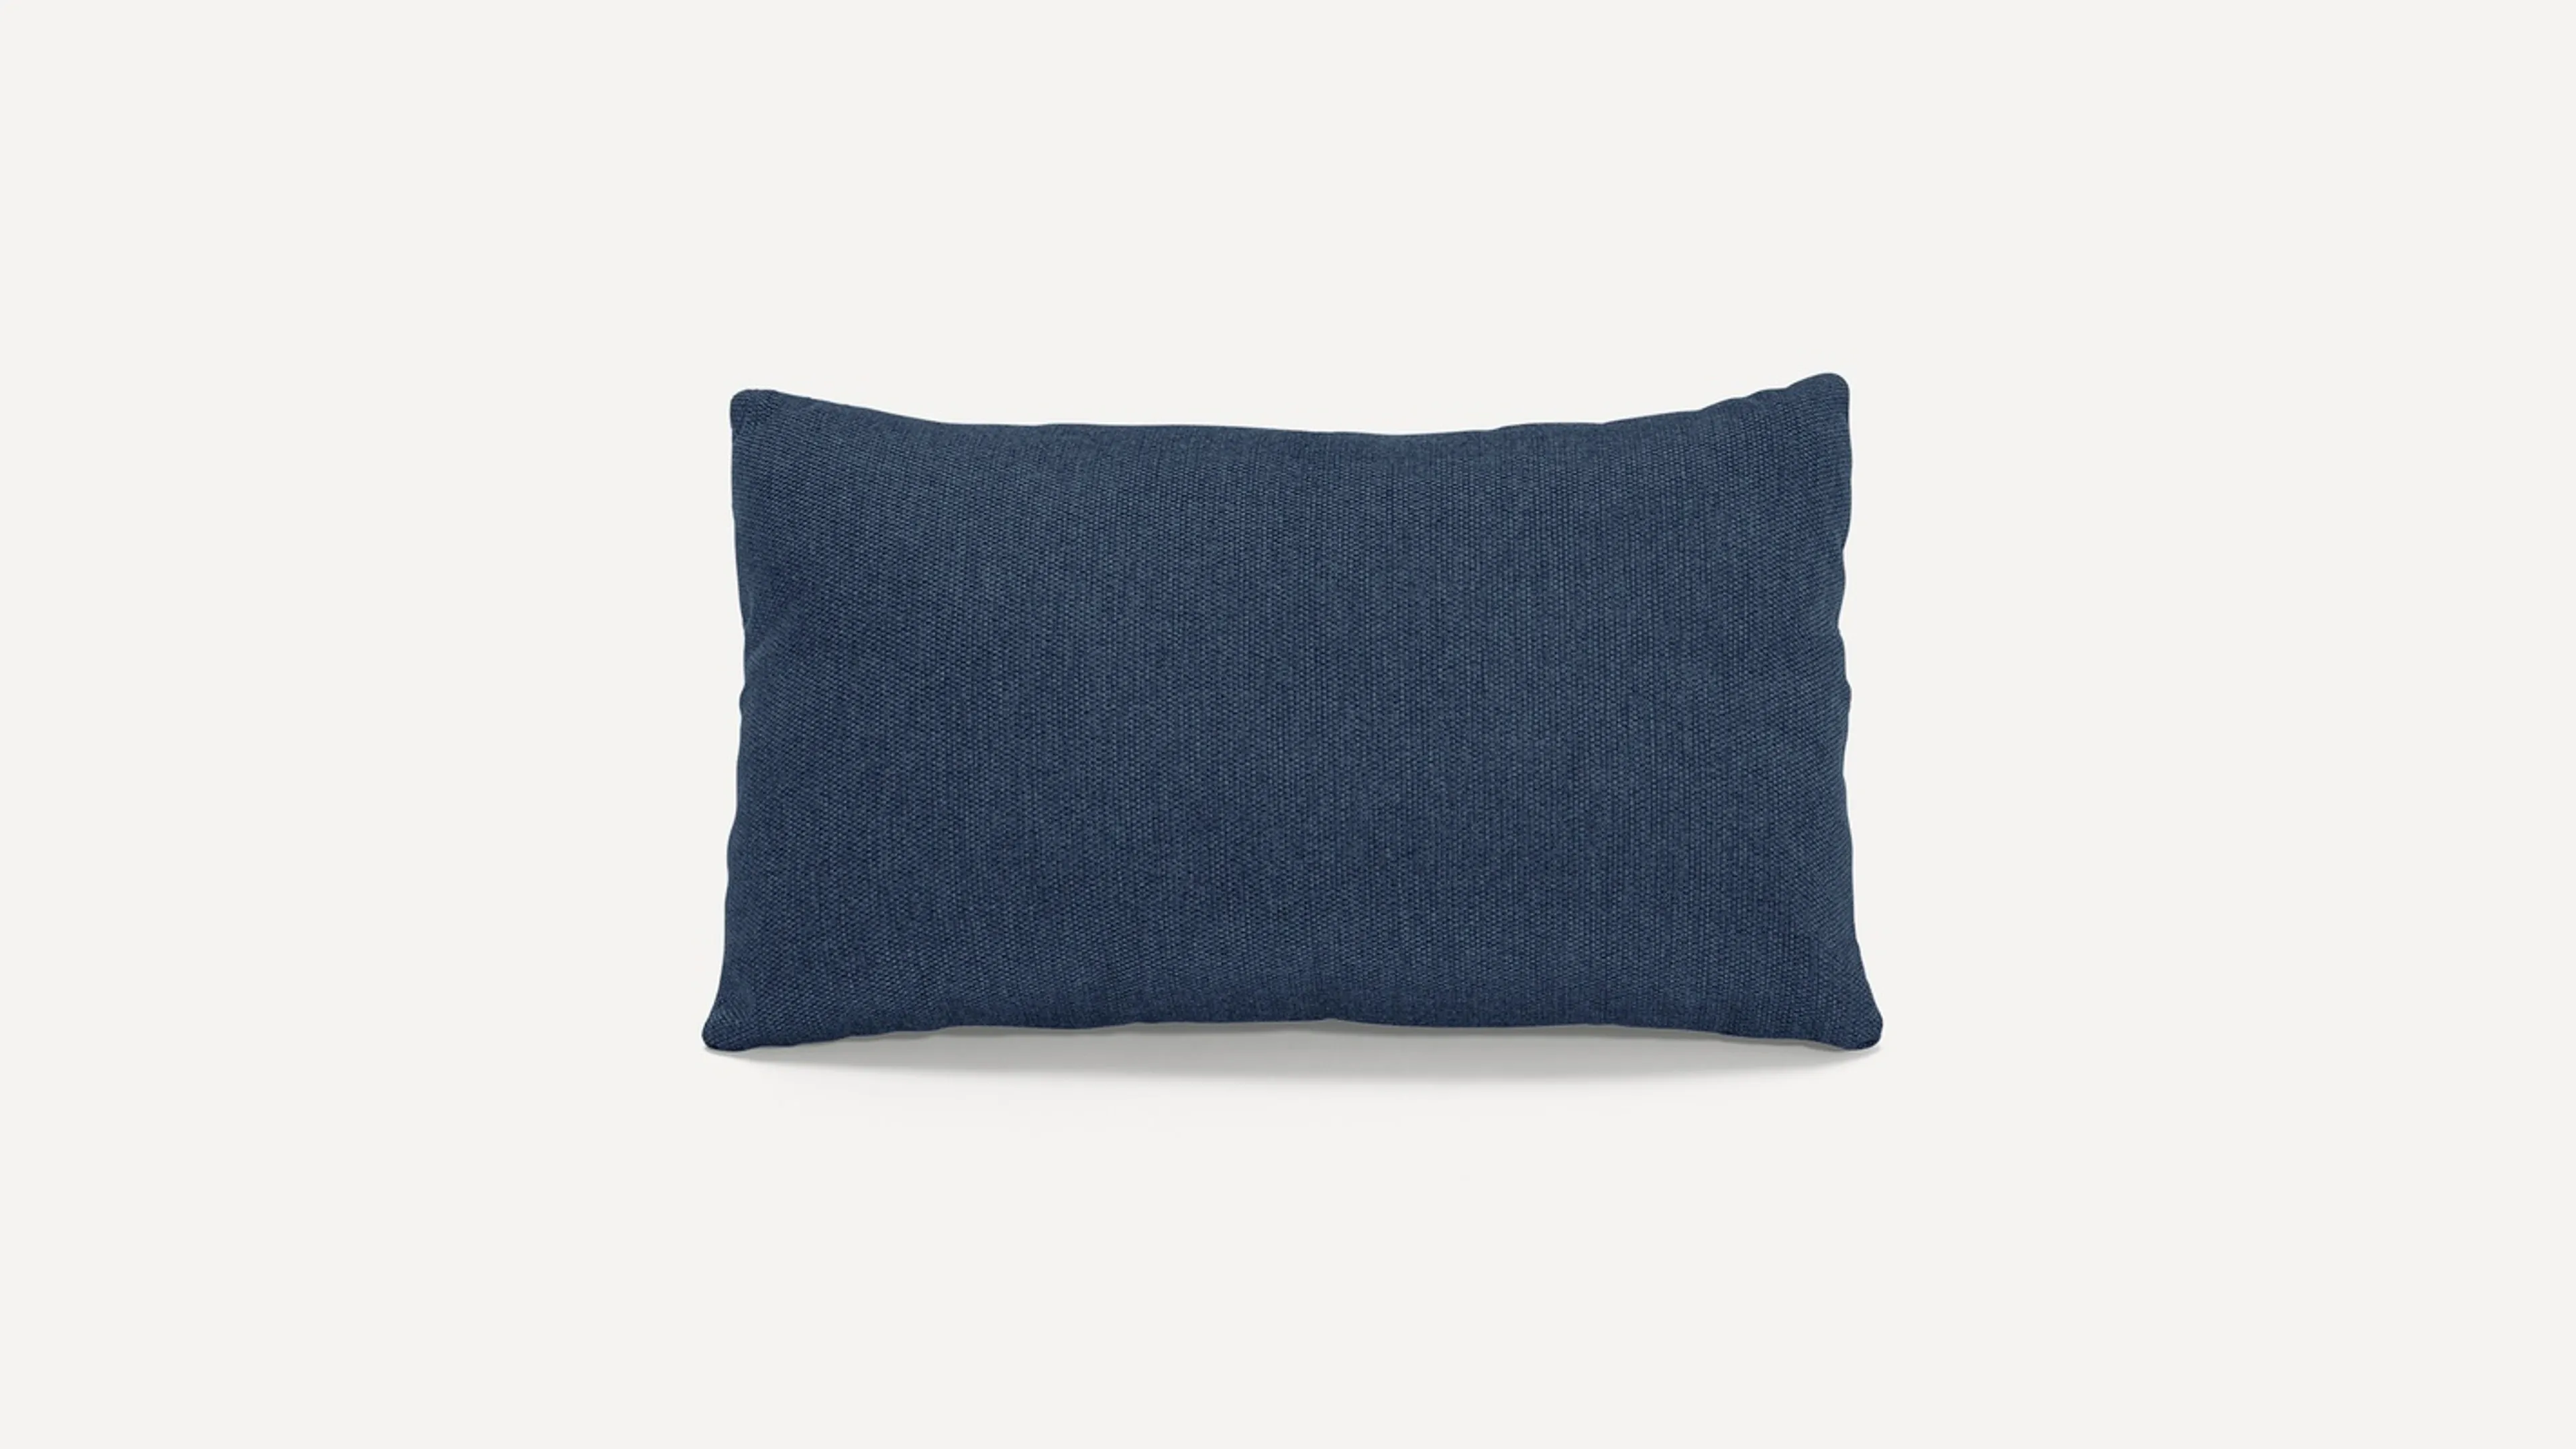 Lumbar Pillow